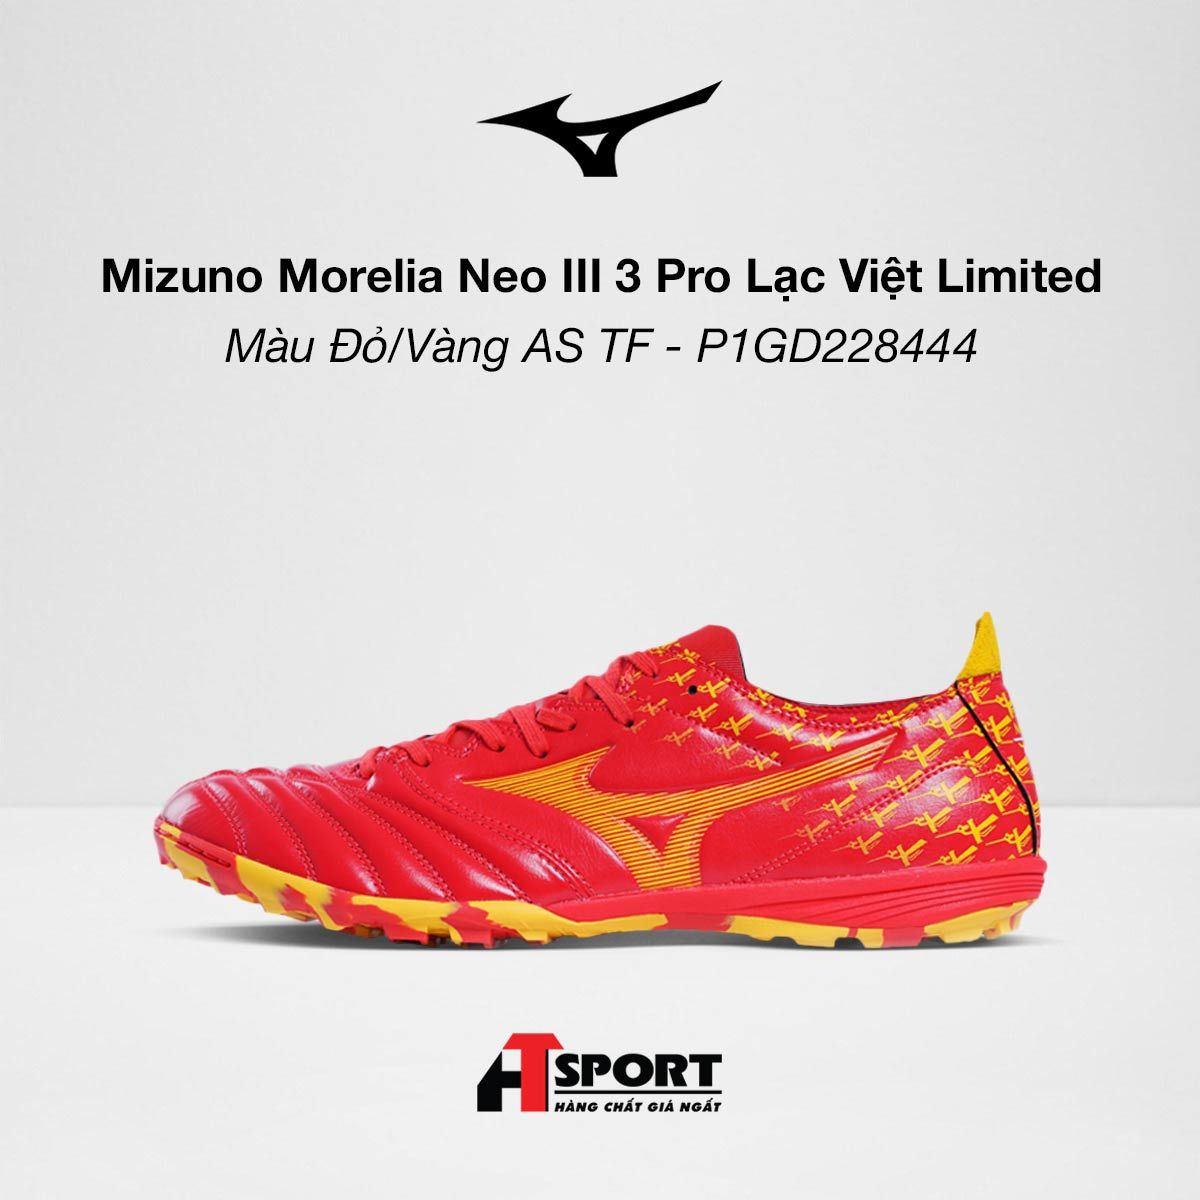  Mizuno Morelia Neo III 3 Pro Lạc Việt Limited - Màu Đỏ/Vàng AS TF - P1GD228444 